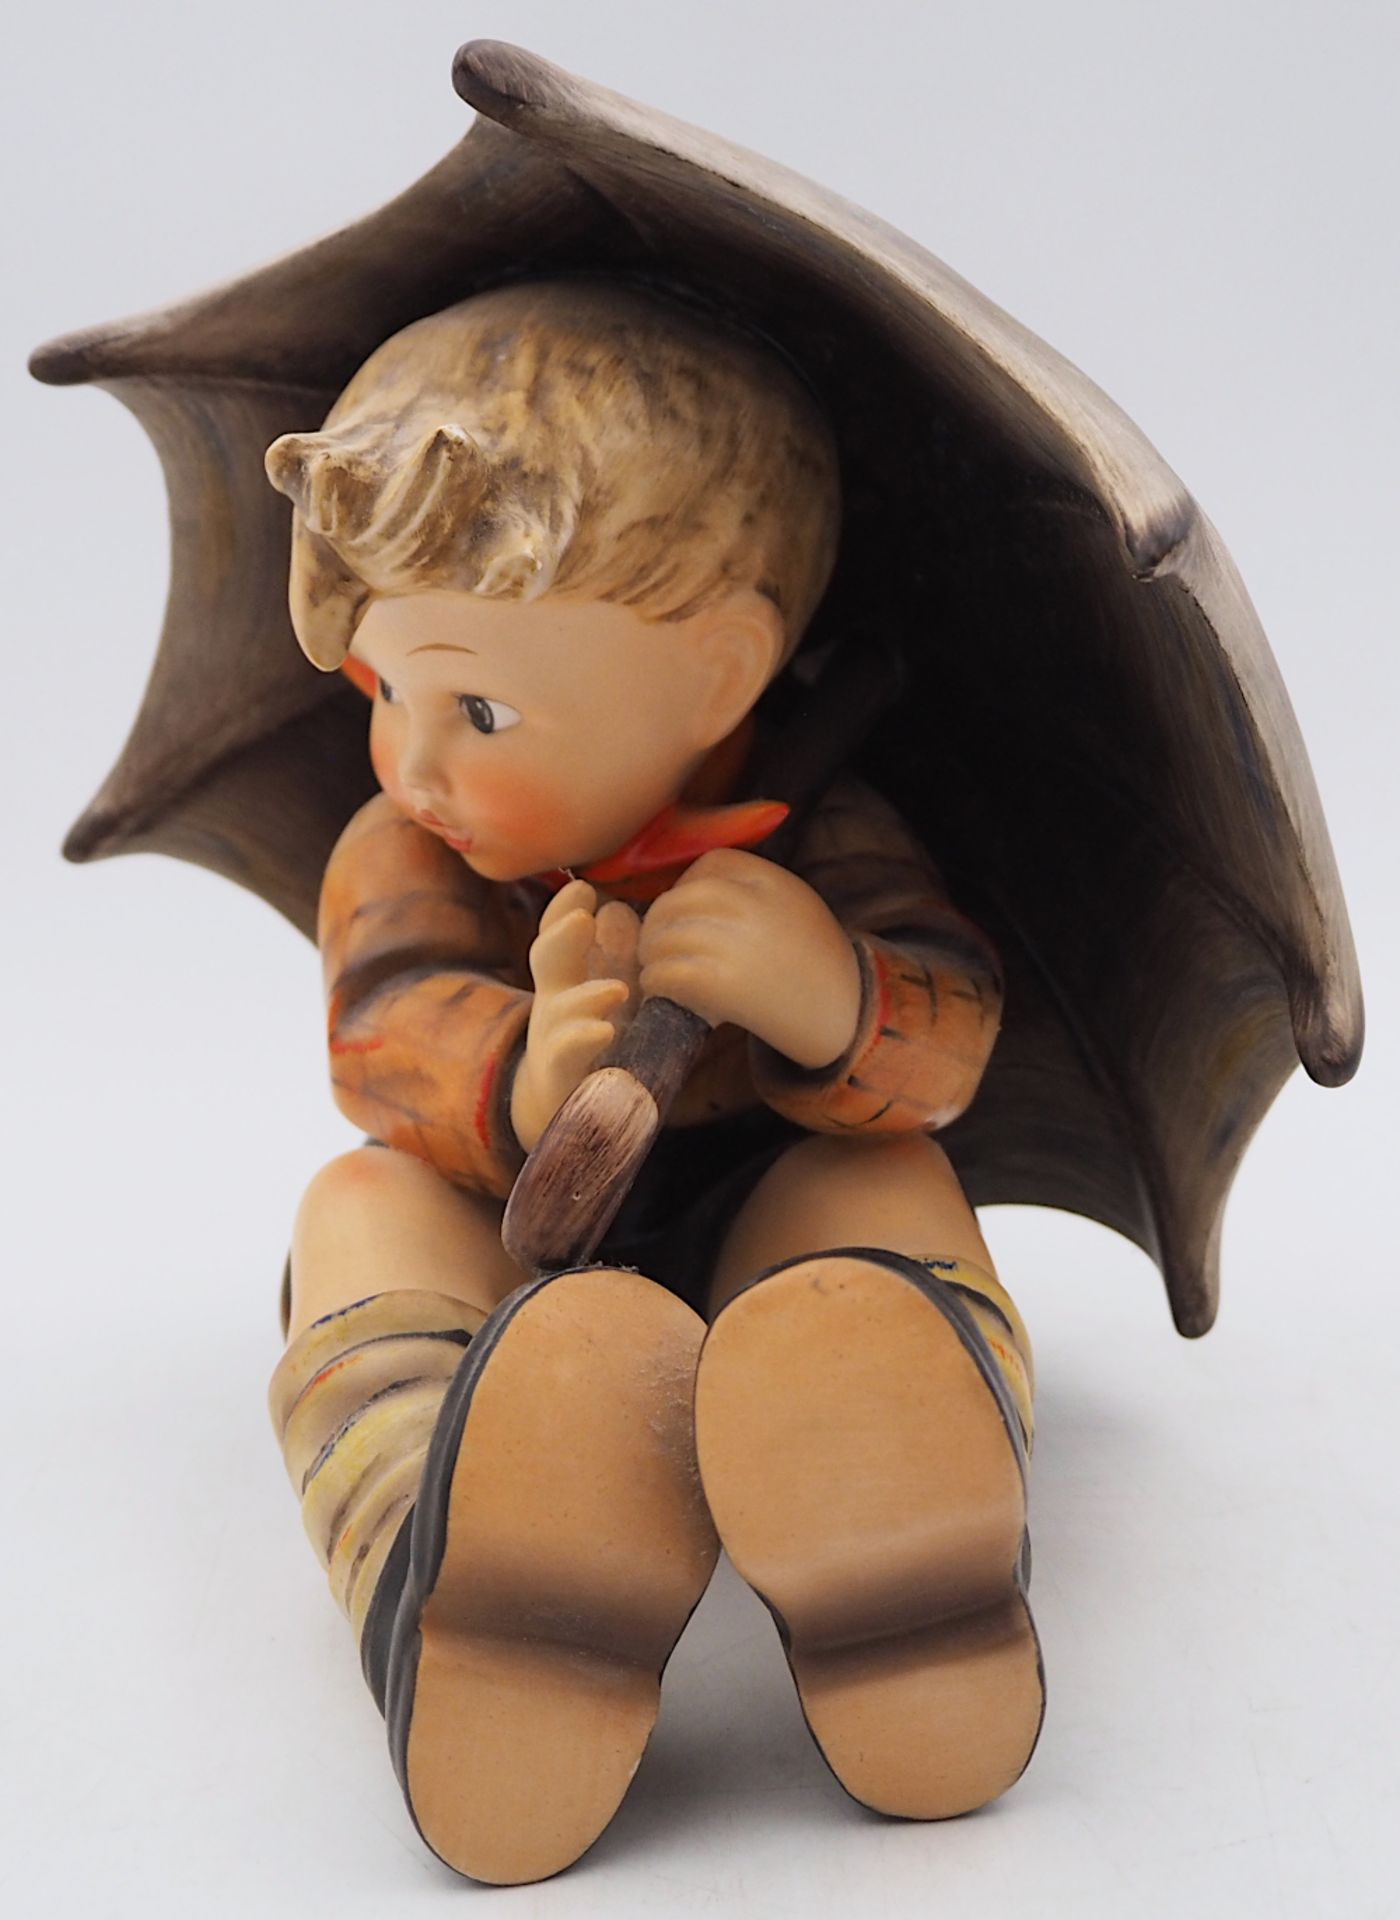 1 Hummelfigur GOEBEL "Knabe unter Schirm/Geborgener Junge" wohl 1960er Jahre Porzellan - Bild 2 aus 5